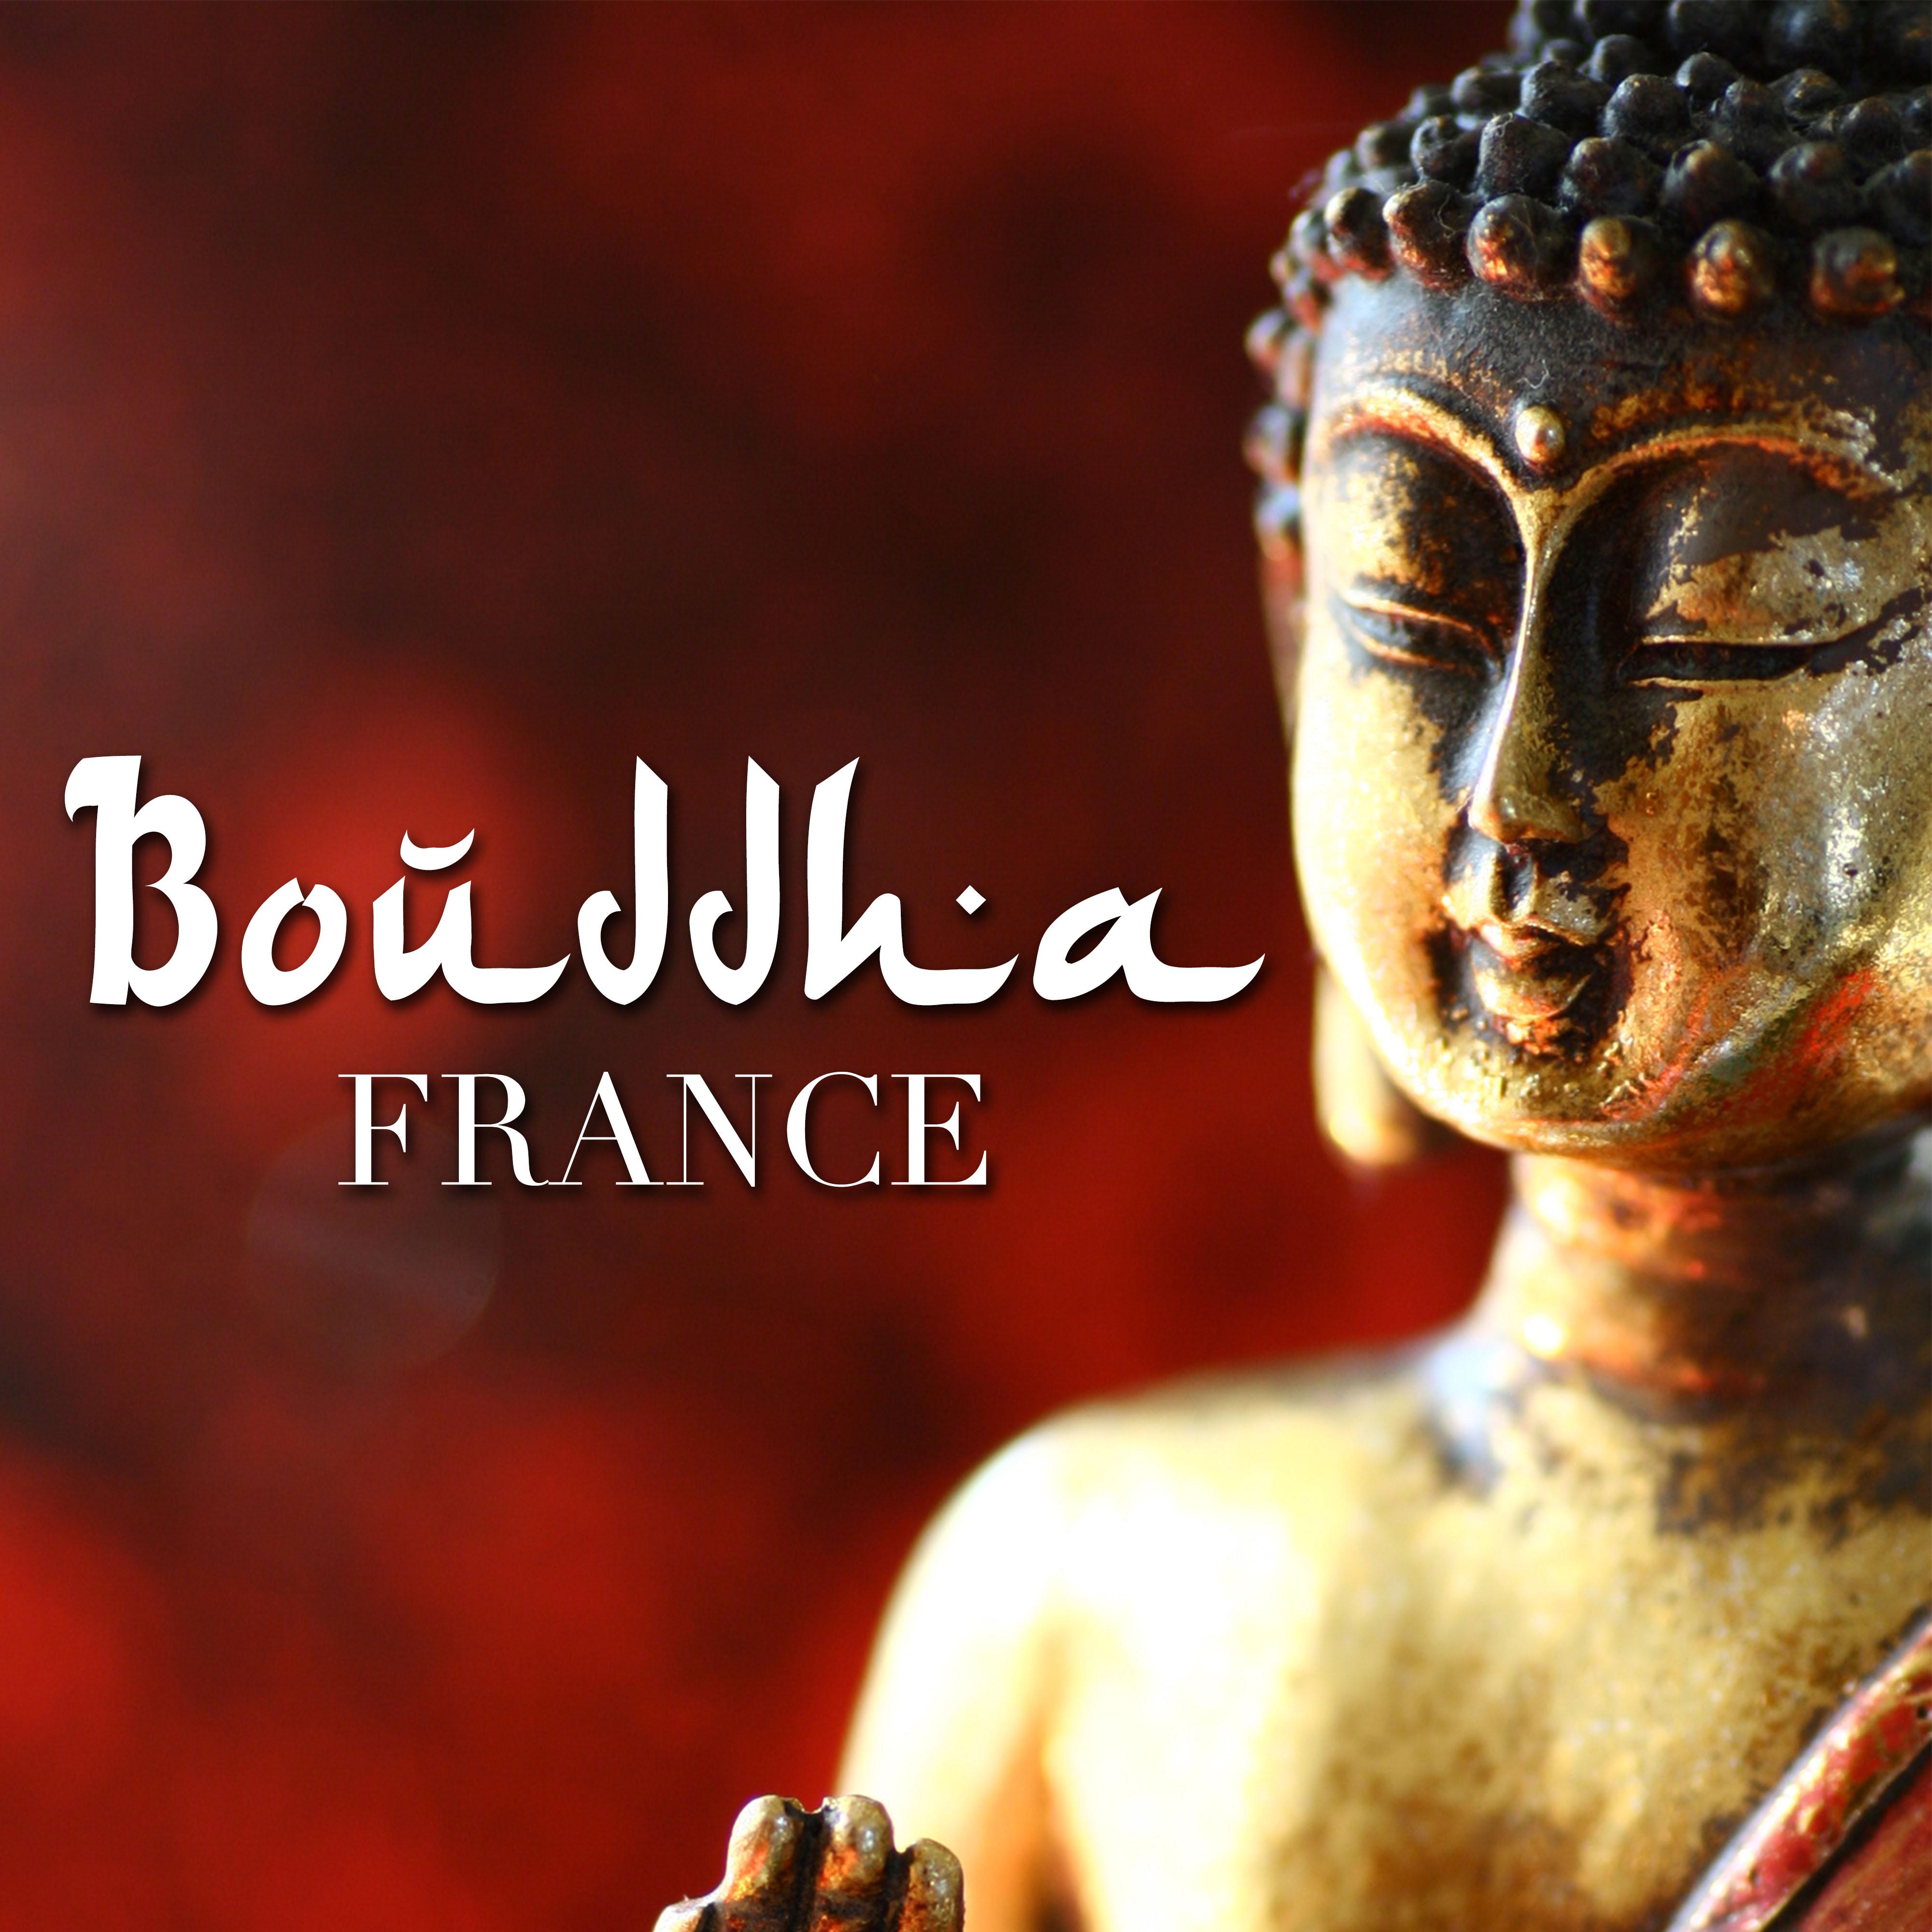 Bouddha France - Musique Instrumentale pour la Relaxation Profonde et la Méditation pour trouver Calme et l'Harmonie et Repousser le Stress, l'Anxiété et la Colère